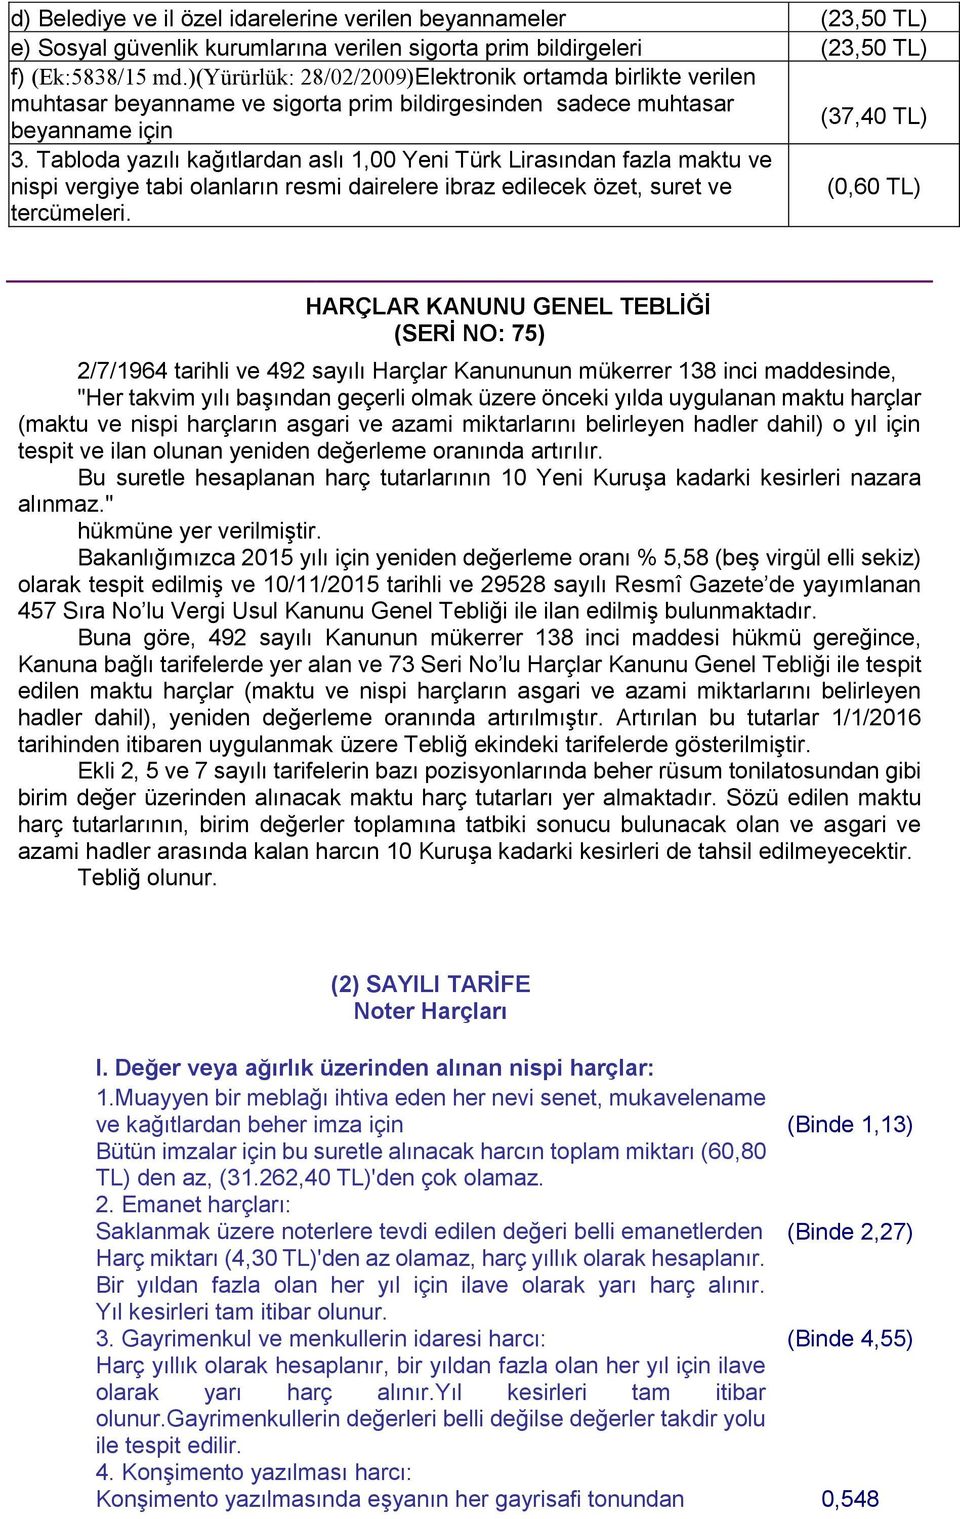 Tabloda yazılı kağıtlardan aslı 1,00 Yeni Türk Lirasından fazla maktu ve nispi vergiye tabi olanların resmi dairelere ibraz edilecek özet, suret ve (0,60 TL) tercümeleri.